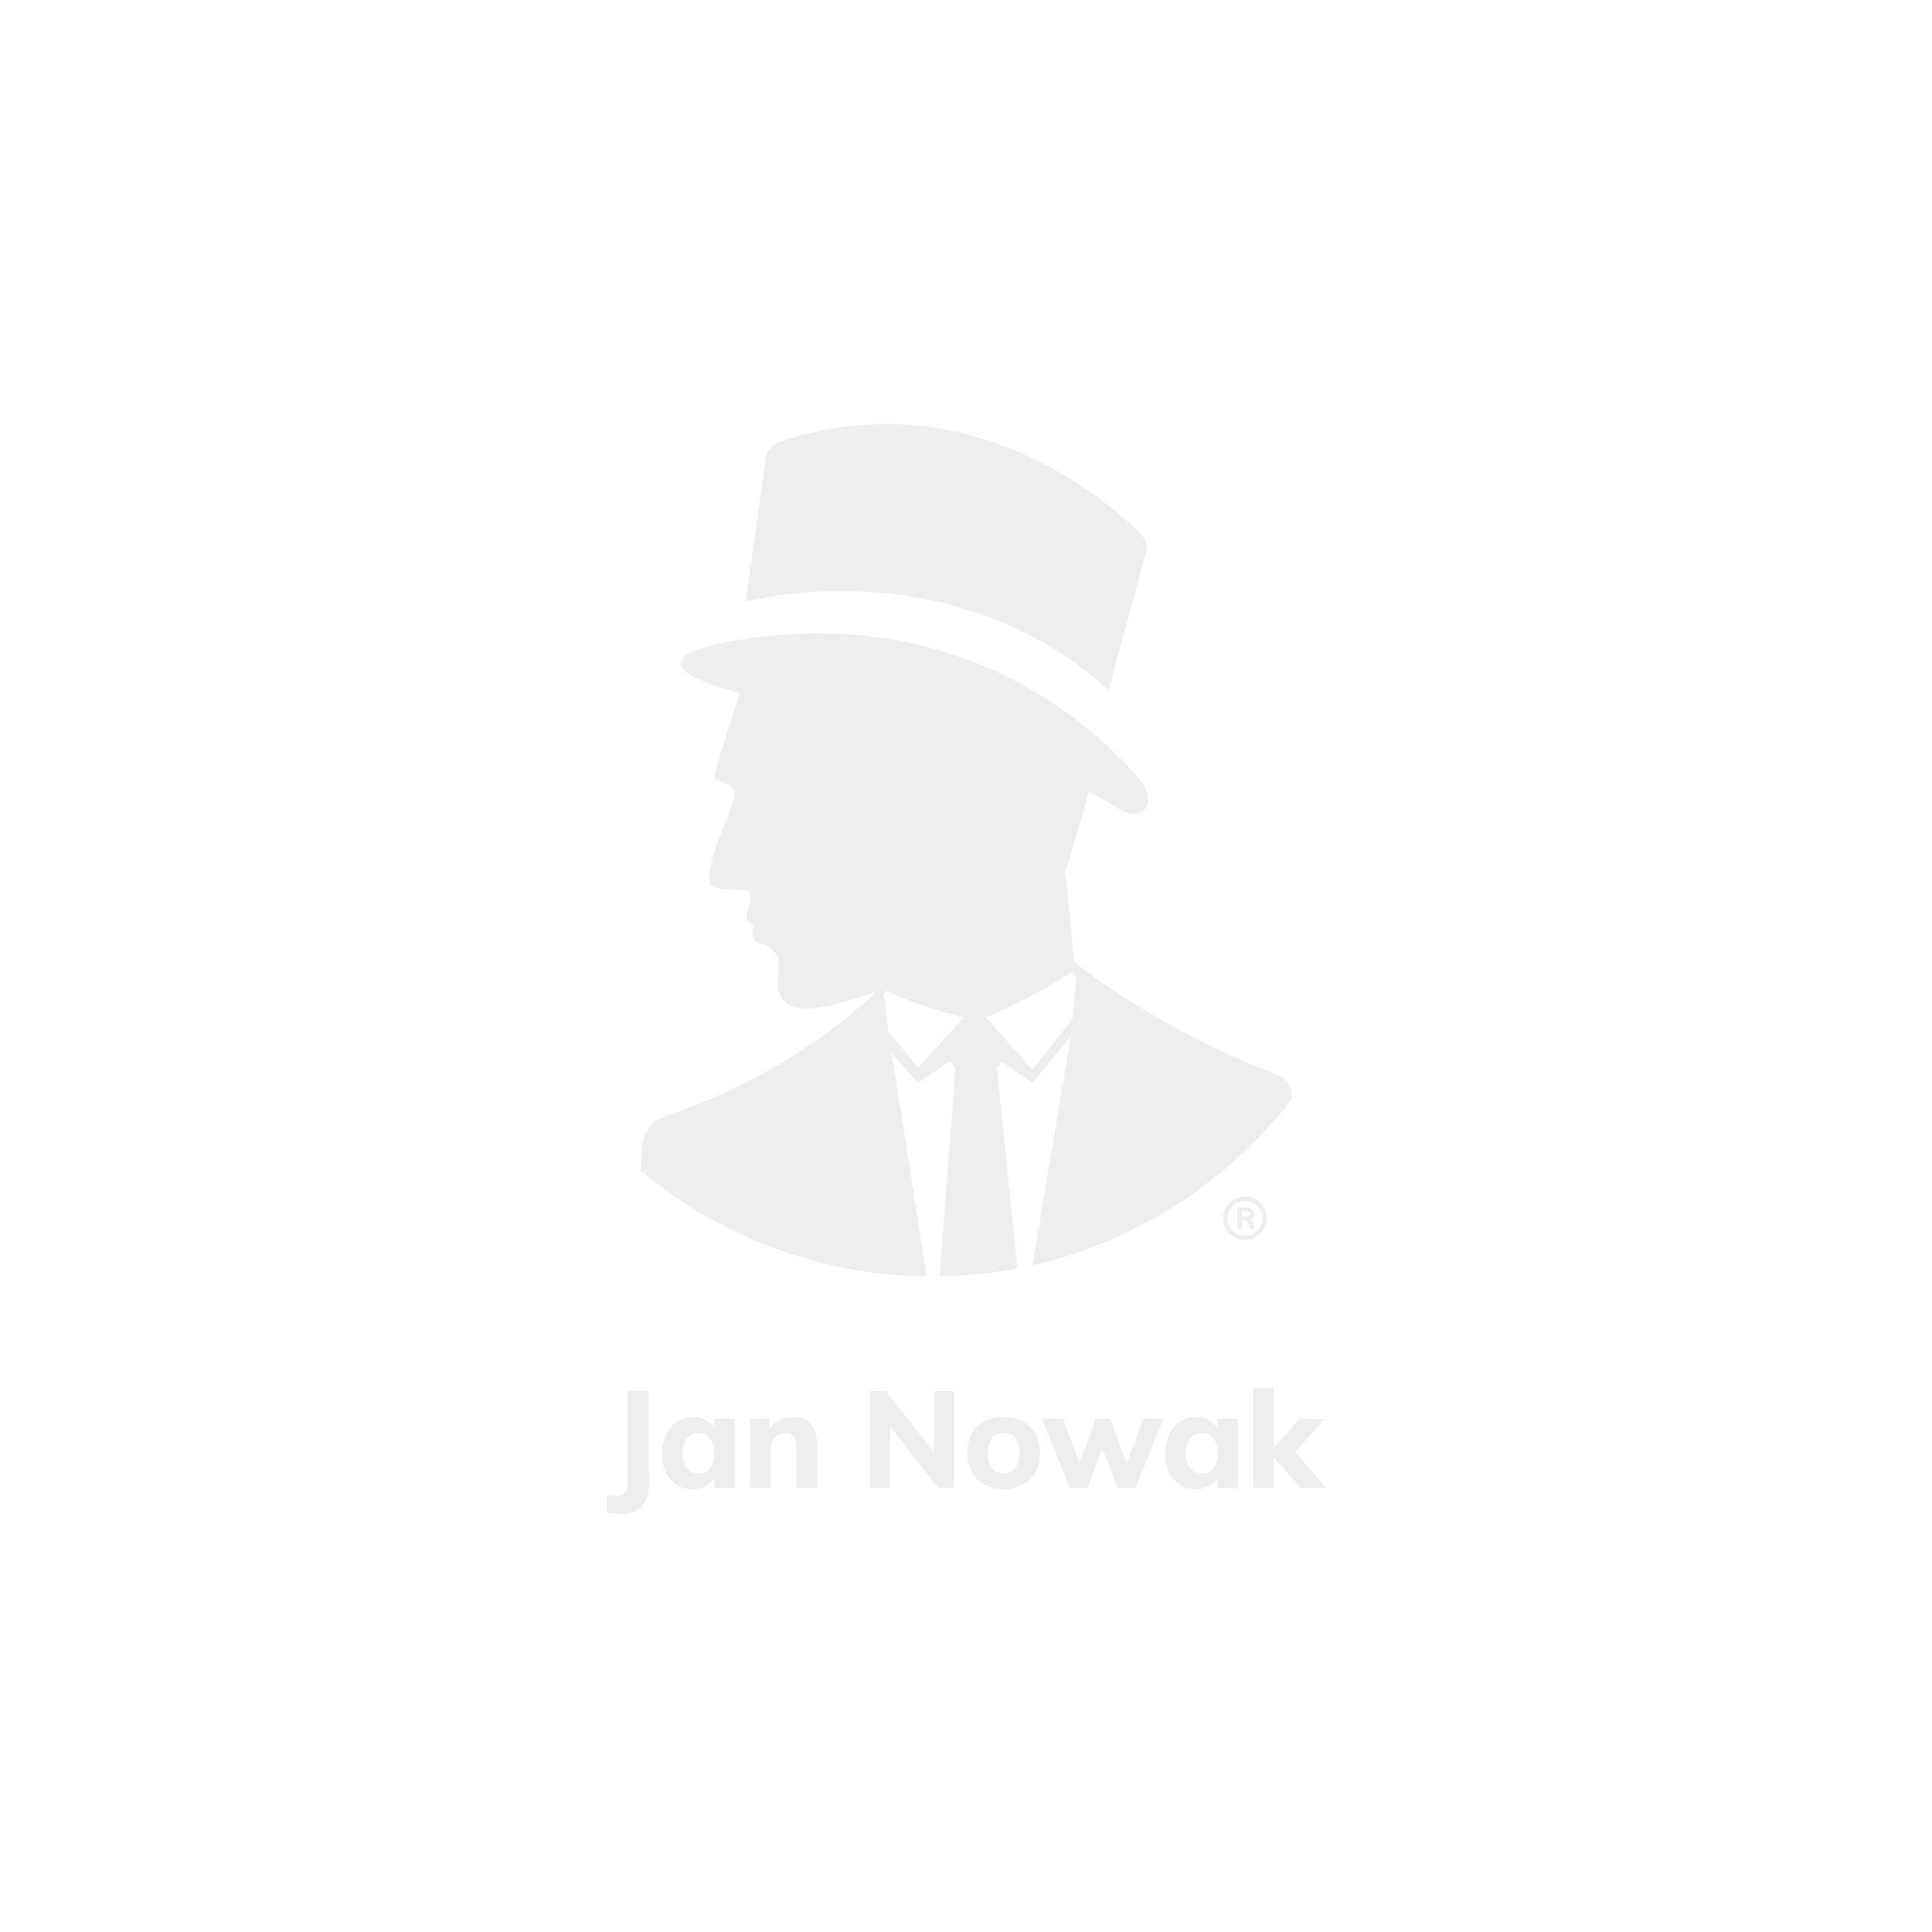 JAN NOWAK model EWA 900x380x400 biurowa nadstawka do szafy antracytowo-biała